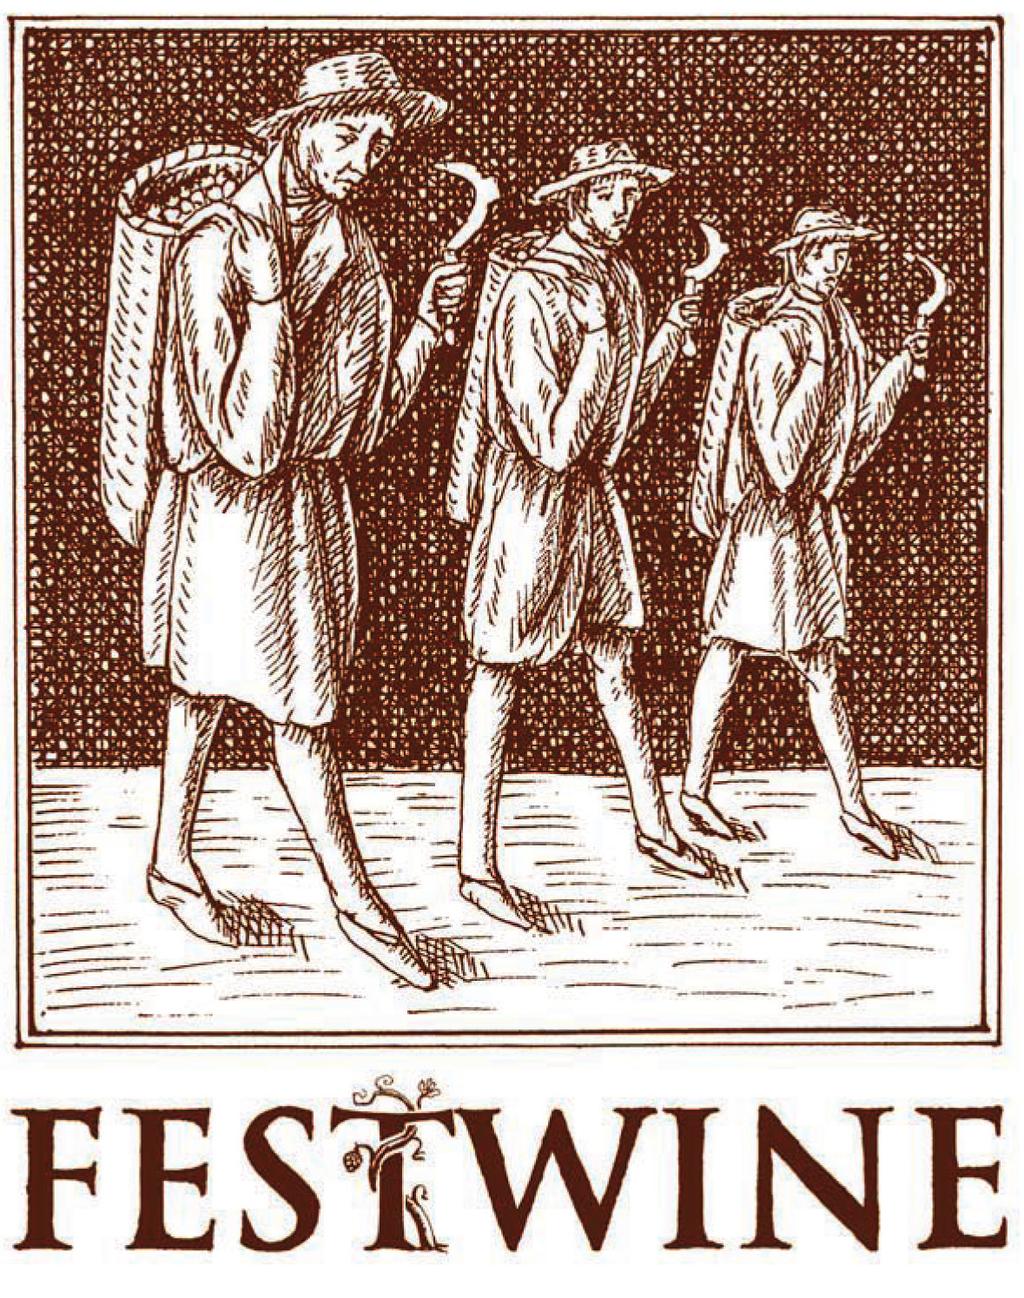 Festwine 2019 Mezinárodní soutěž vín Velké